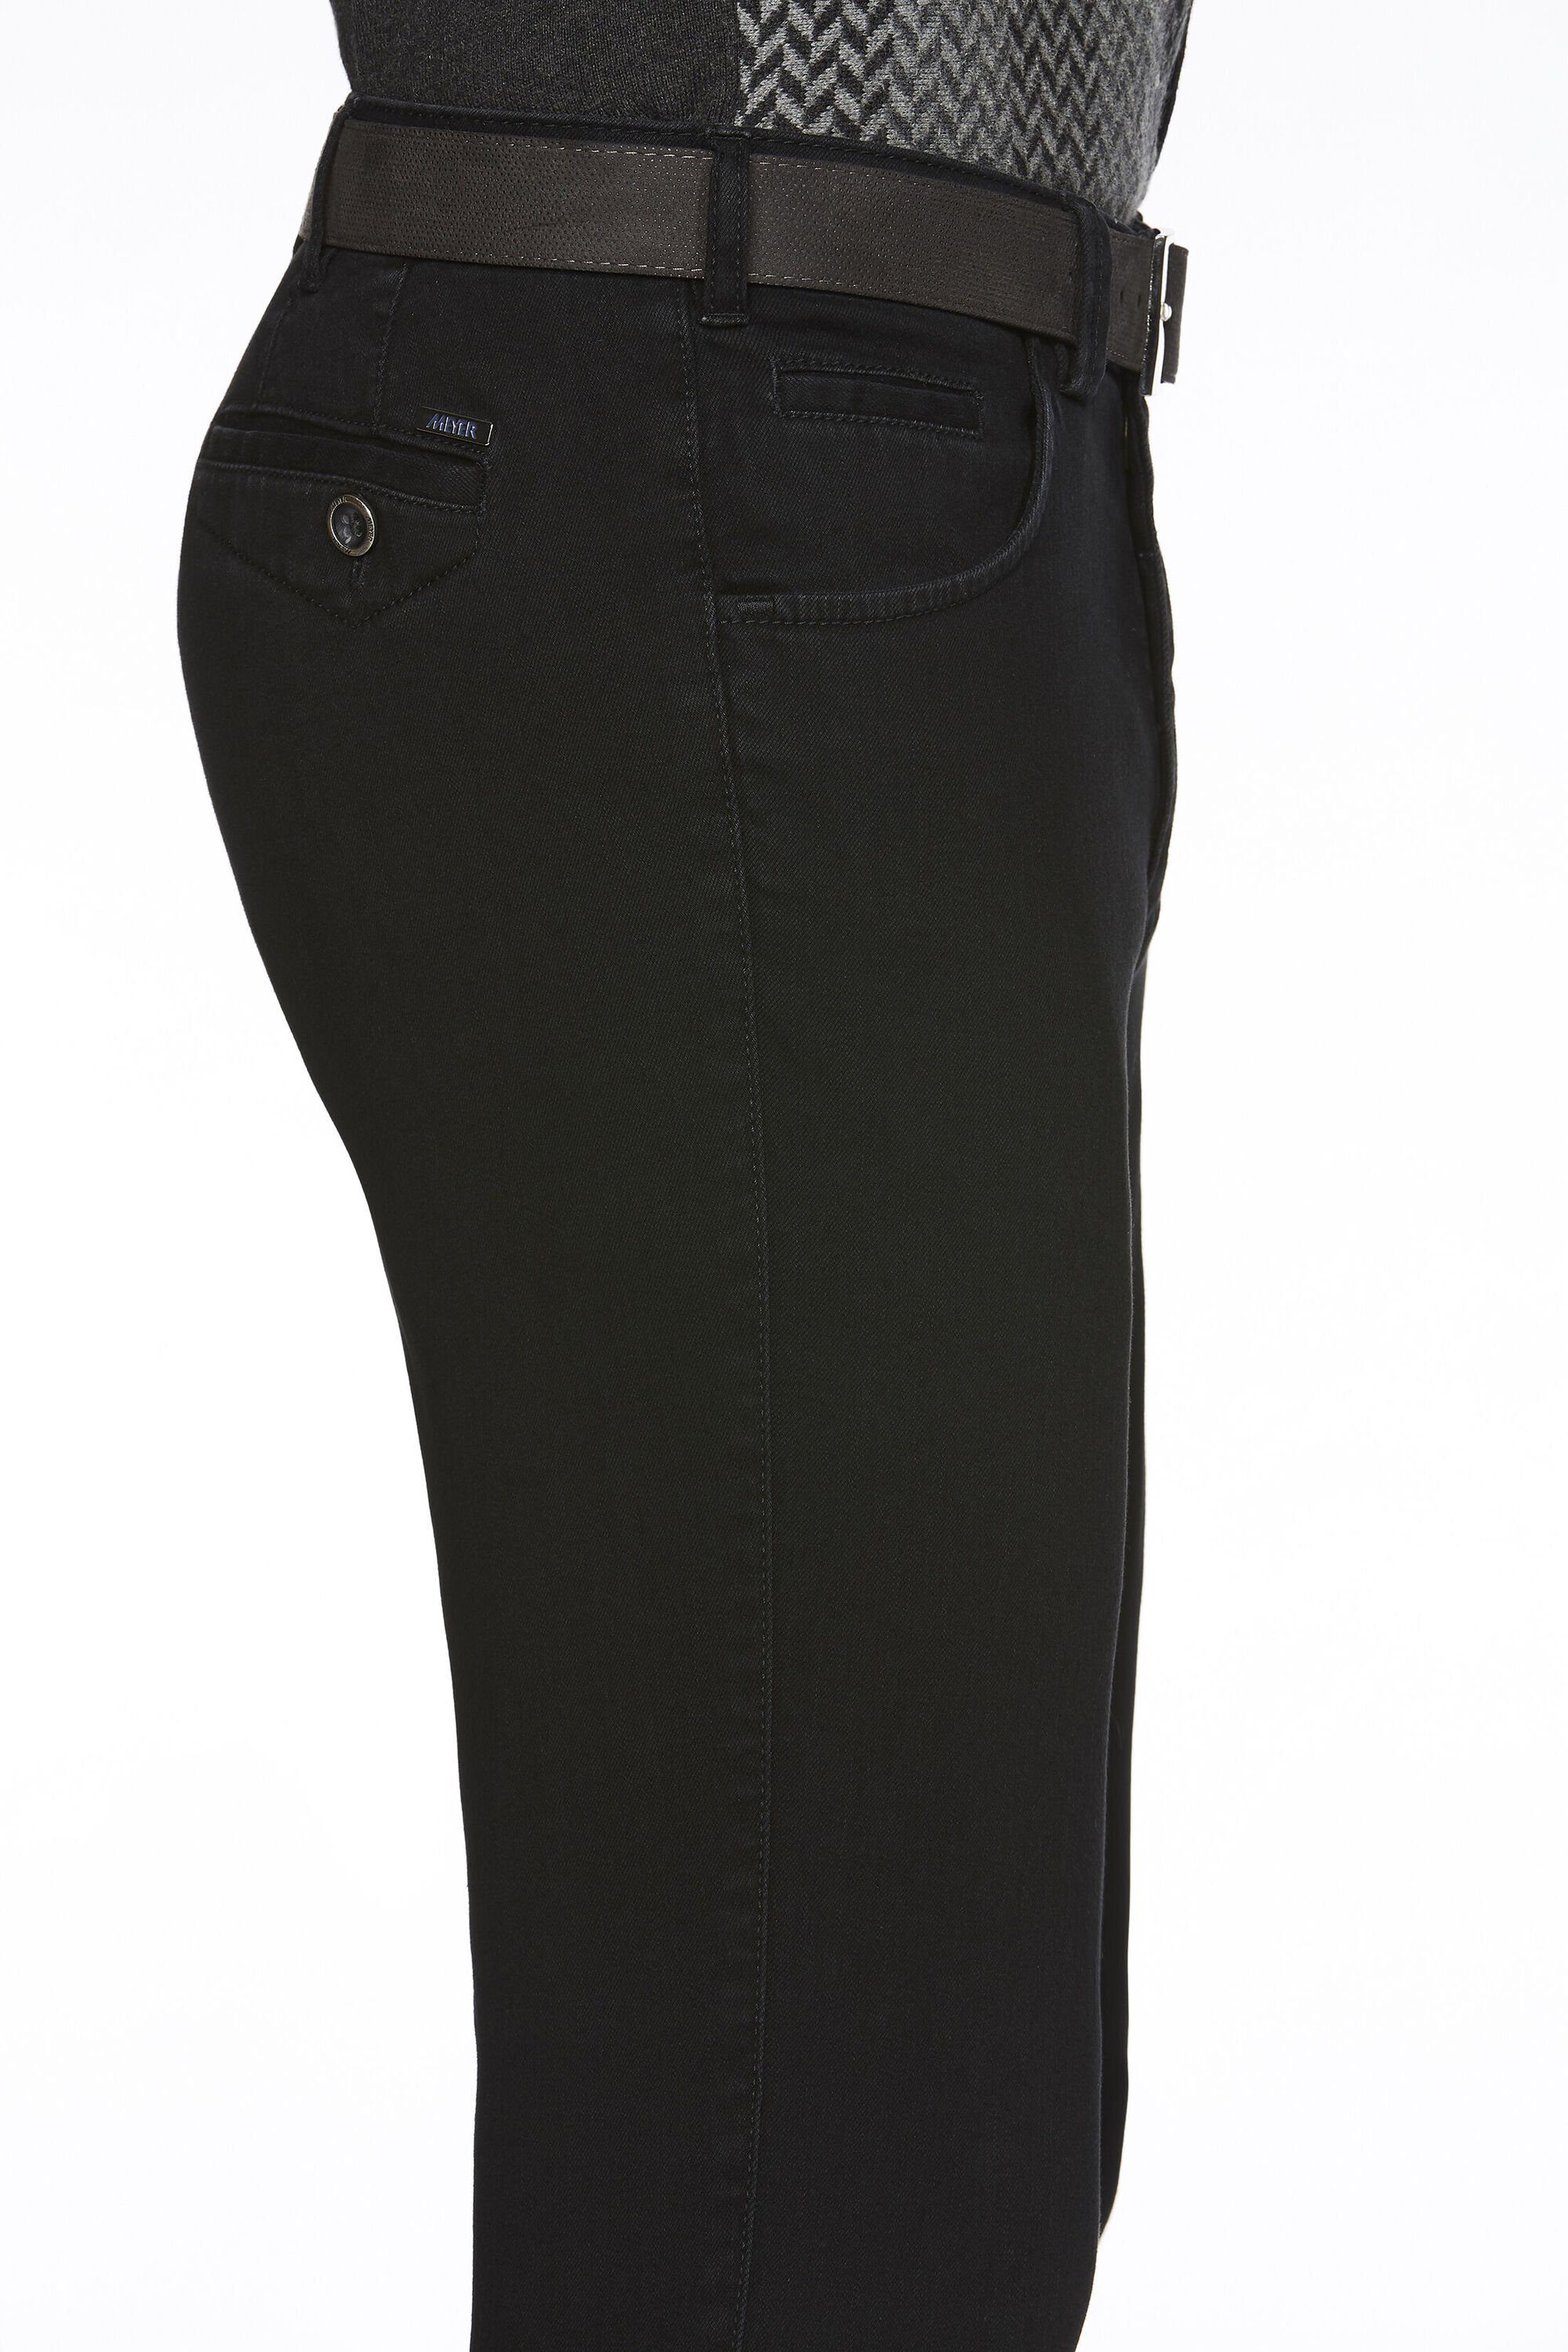 MEYER Stretch-Dehnbund Chino Dublin schwarz Slim-fit-Jeans mit